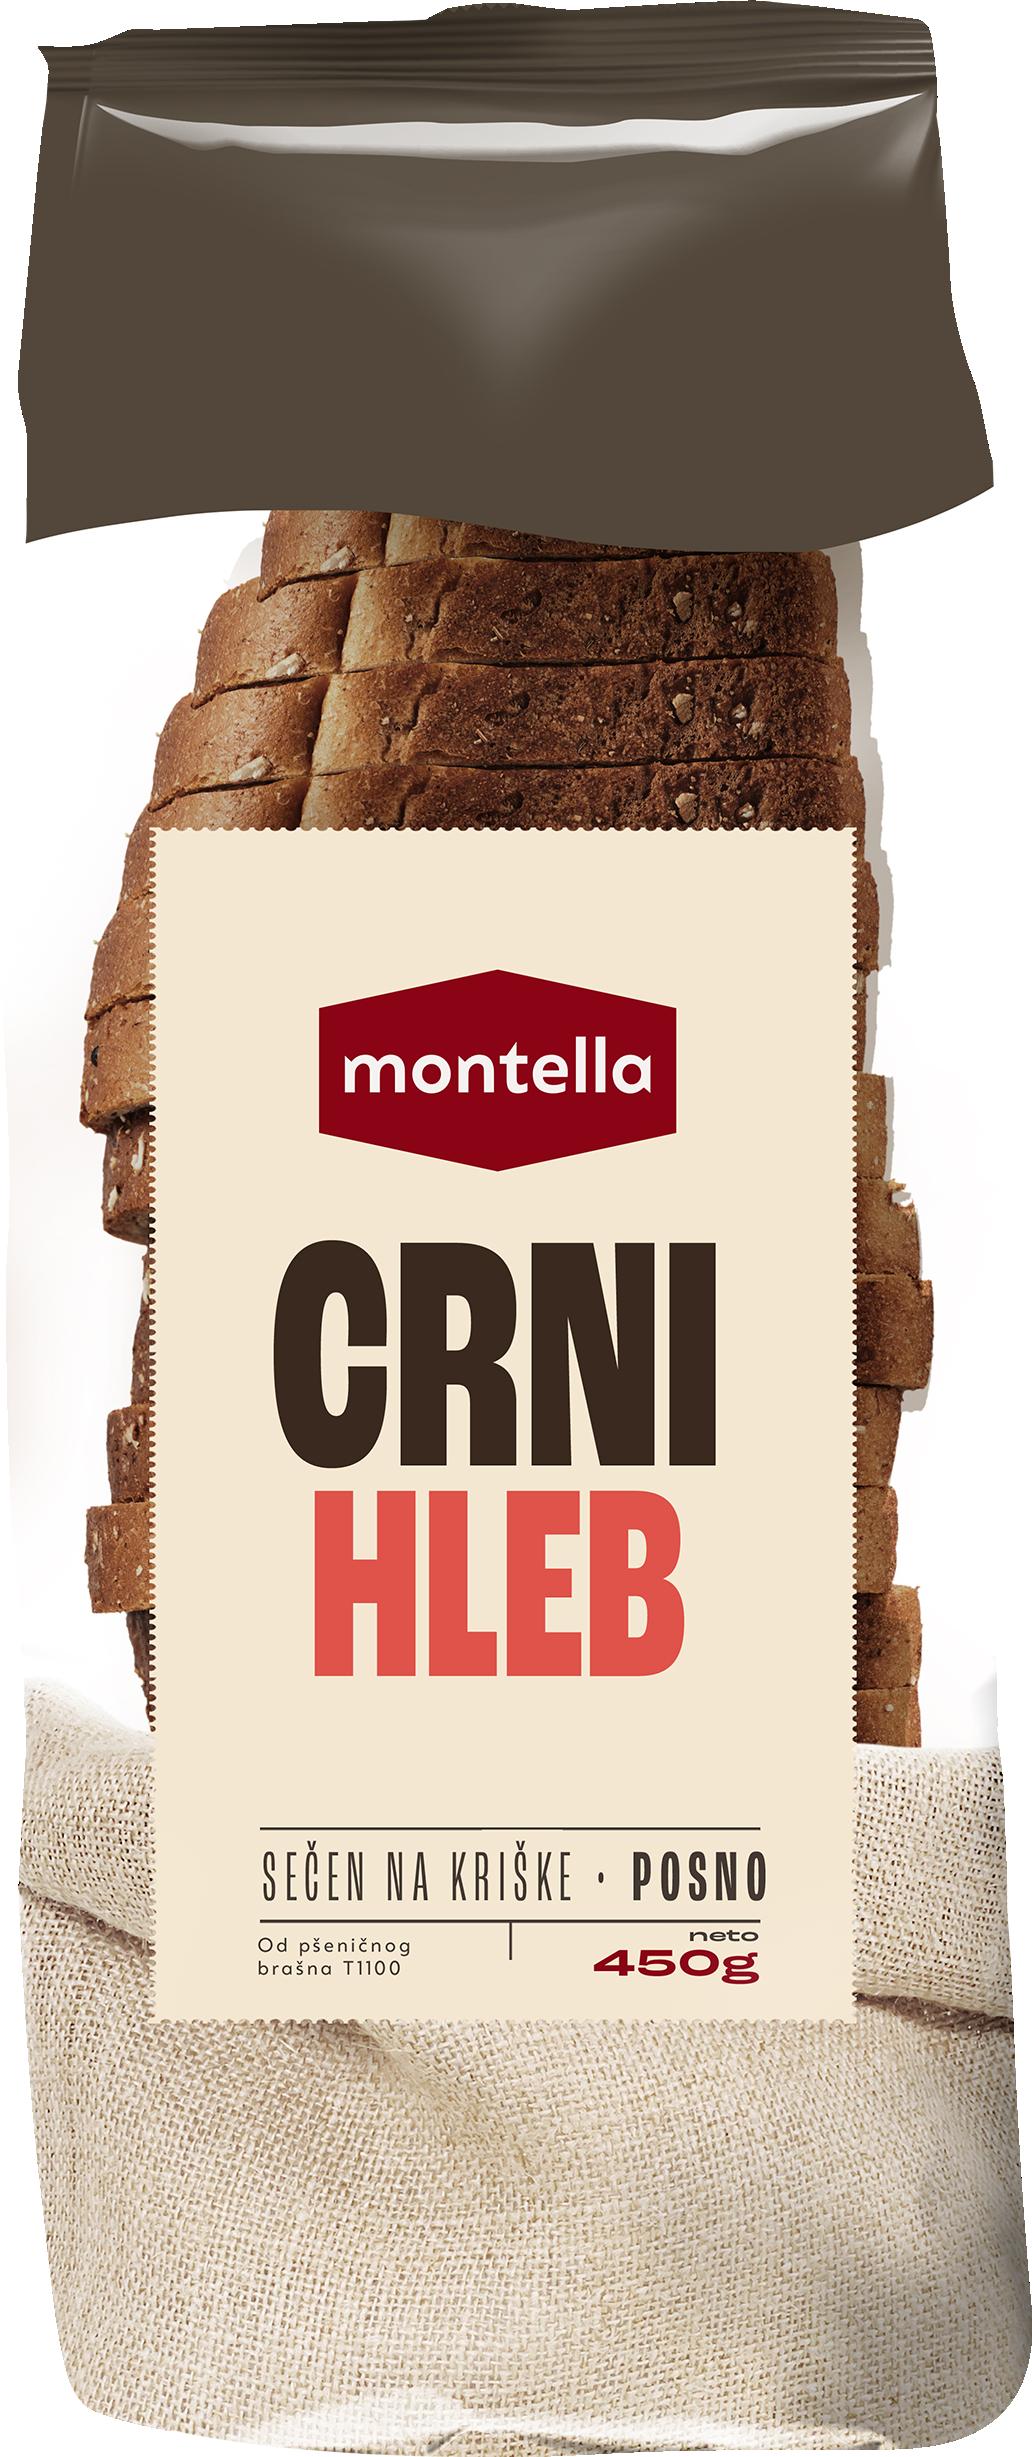 Slika za Hleb tamni sečeni Montella 450g